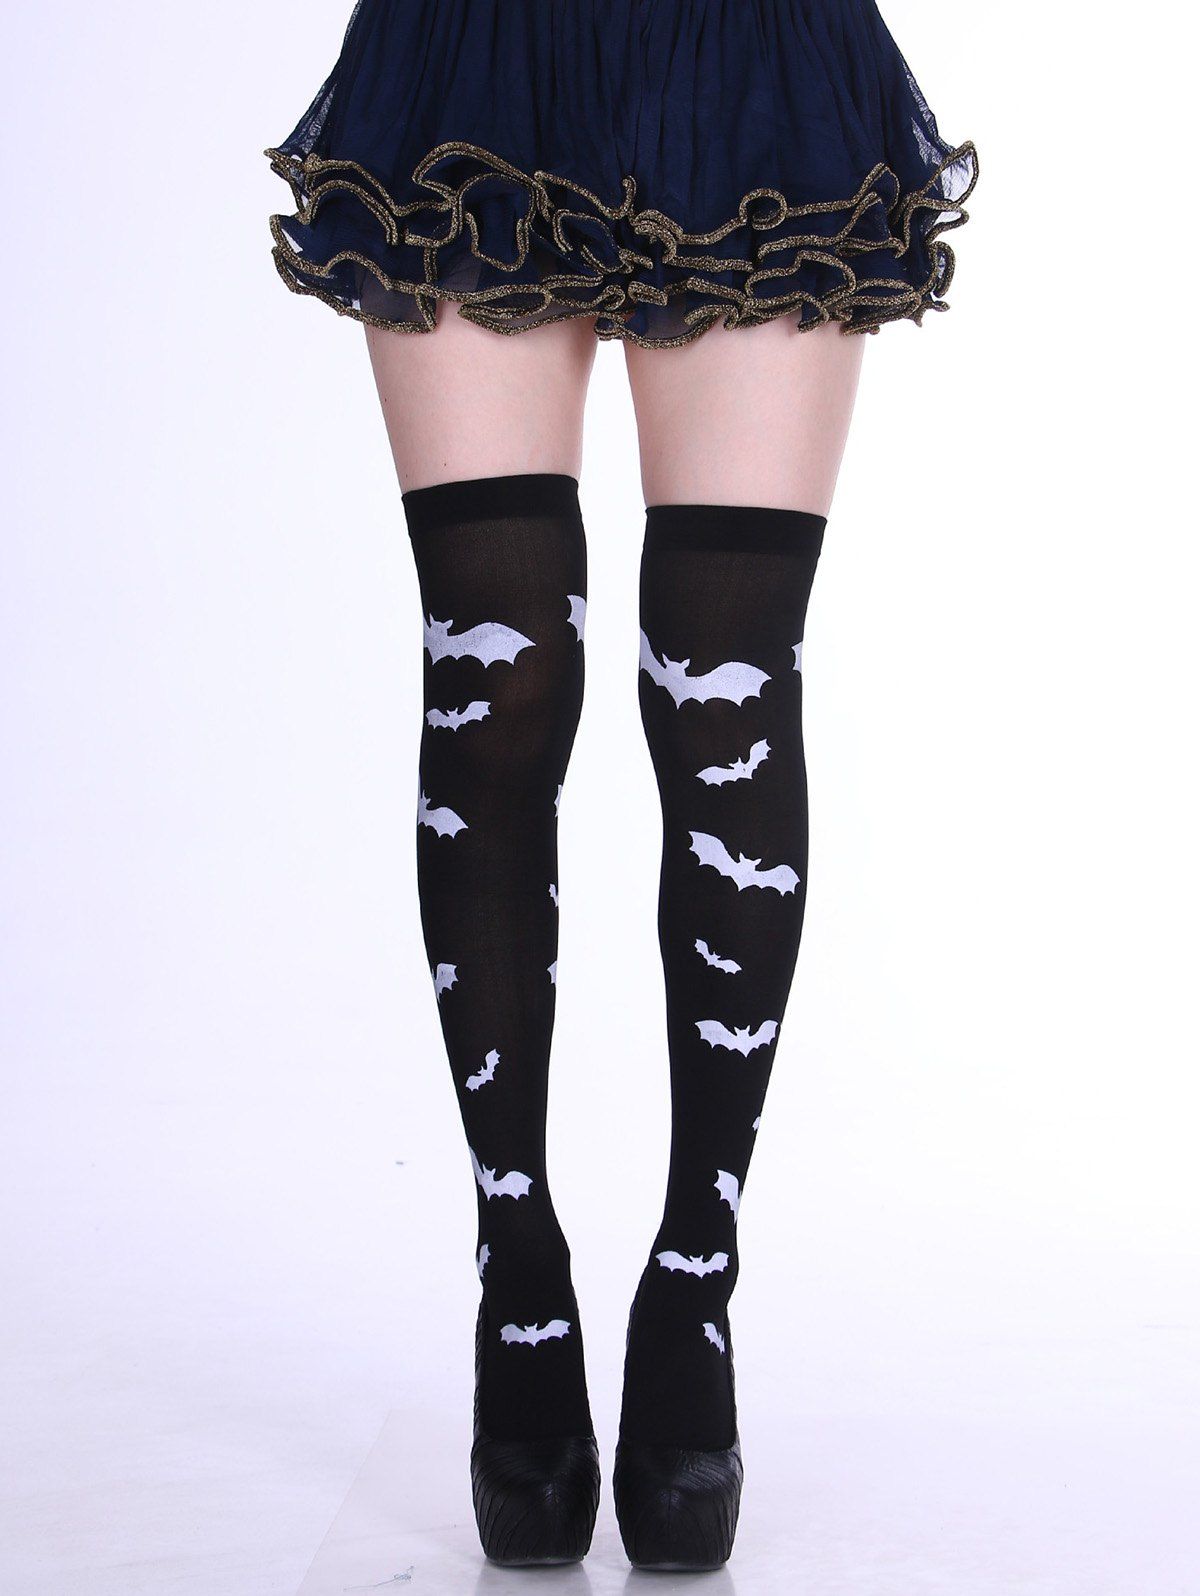 Chaussettes D'Halloween Gothique Elastique Motif de Chauve-souris - Noir ONE SIZE